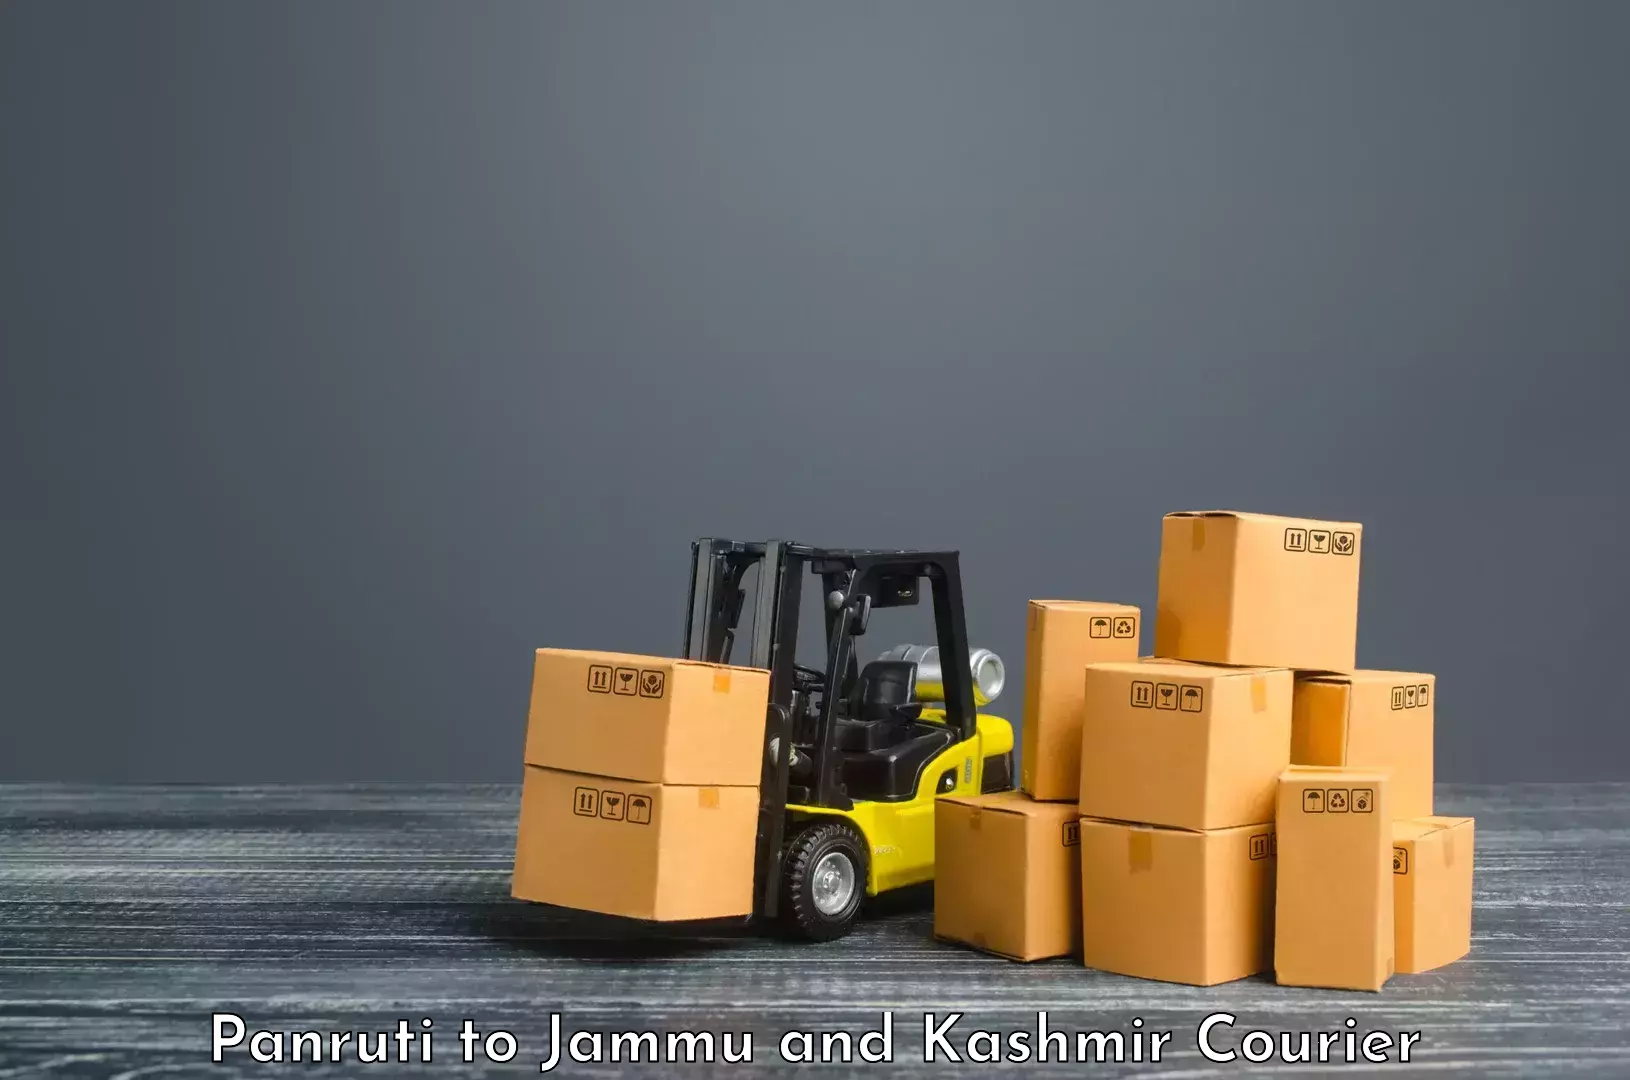 Comprehensive shipping services Panruti to Jammu and Kashmir